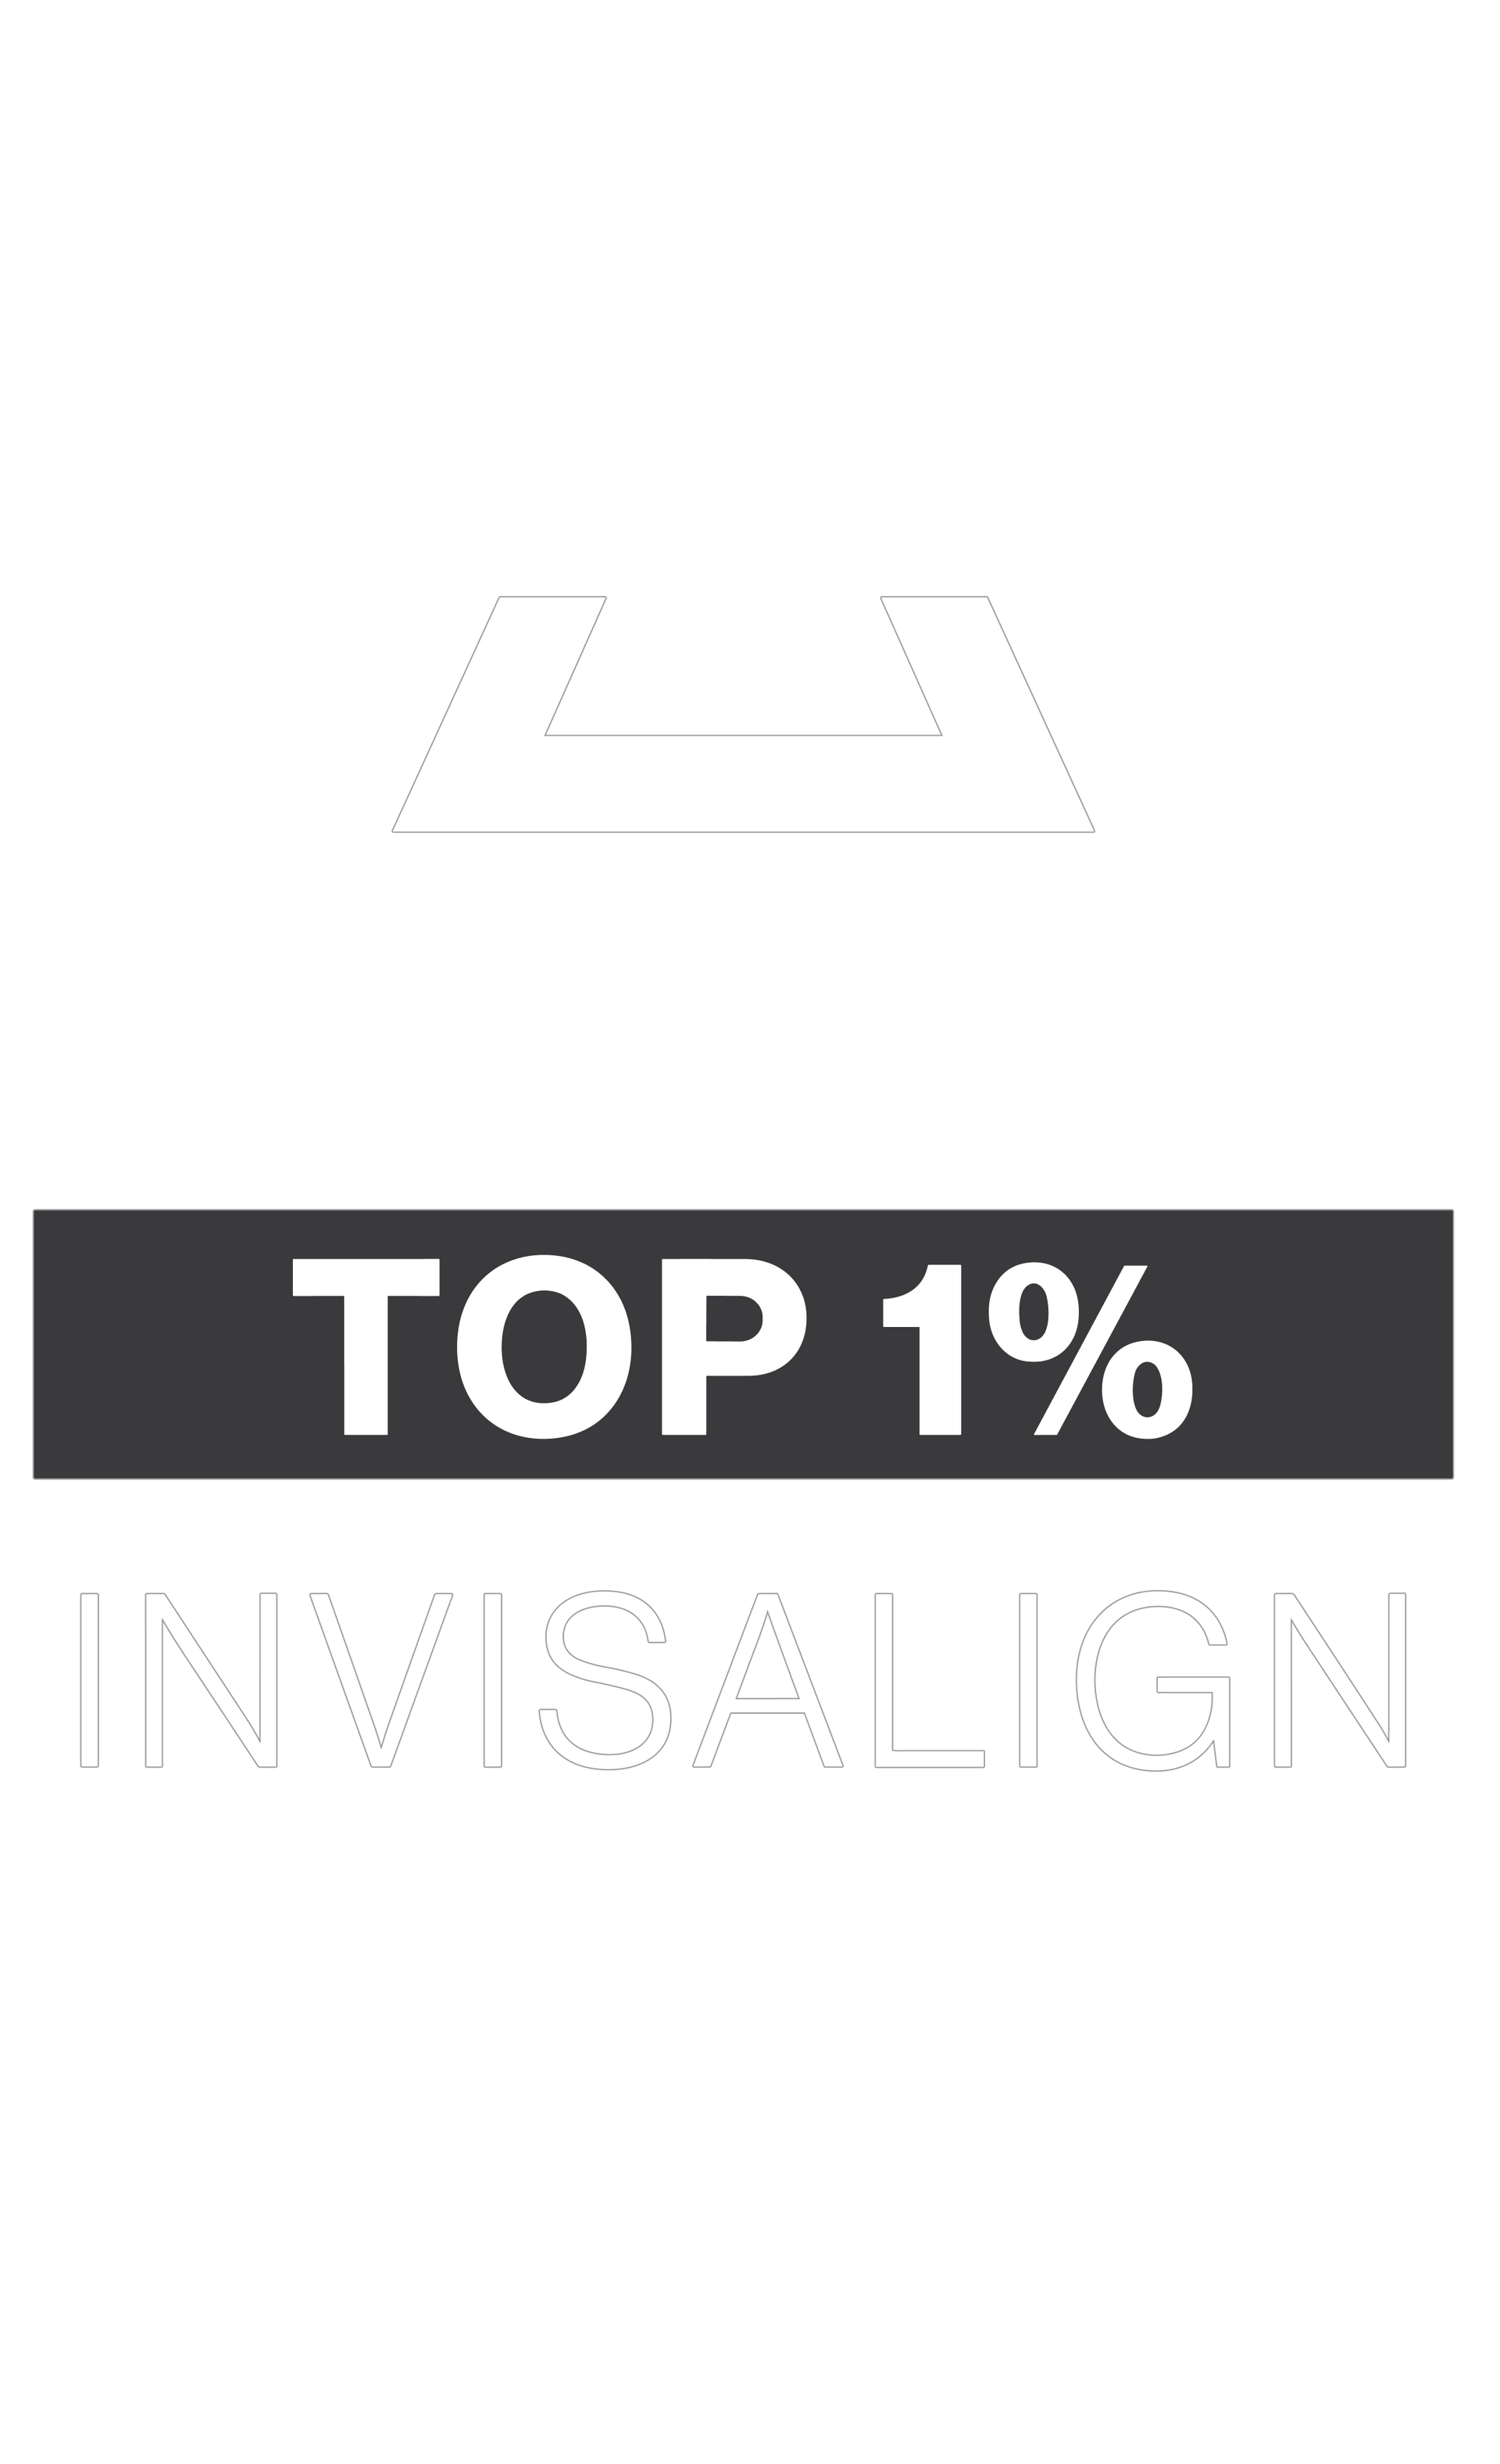 Diamond+ Top 1% Invisalign Provider 2023